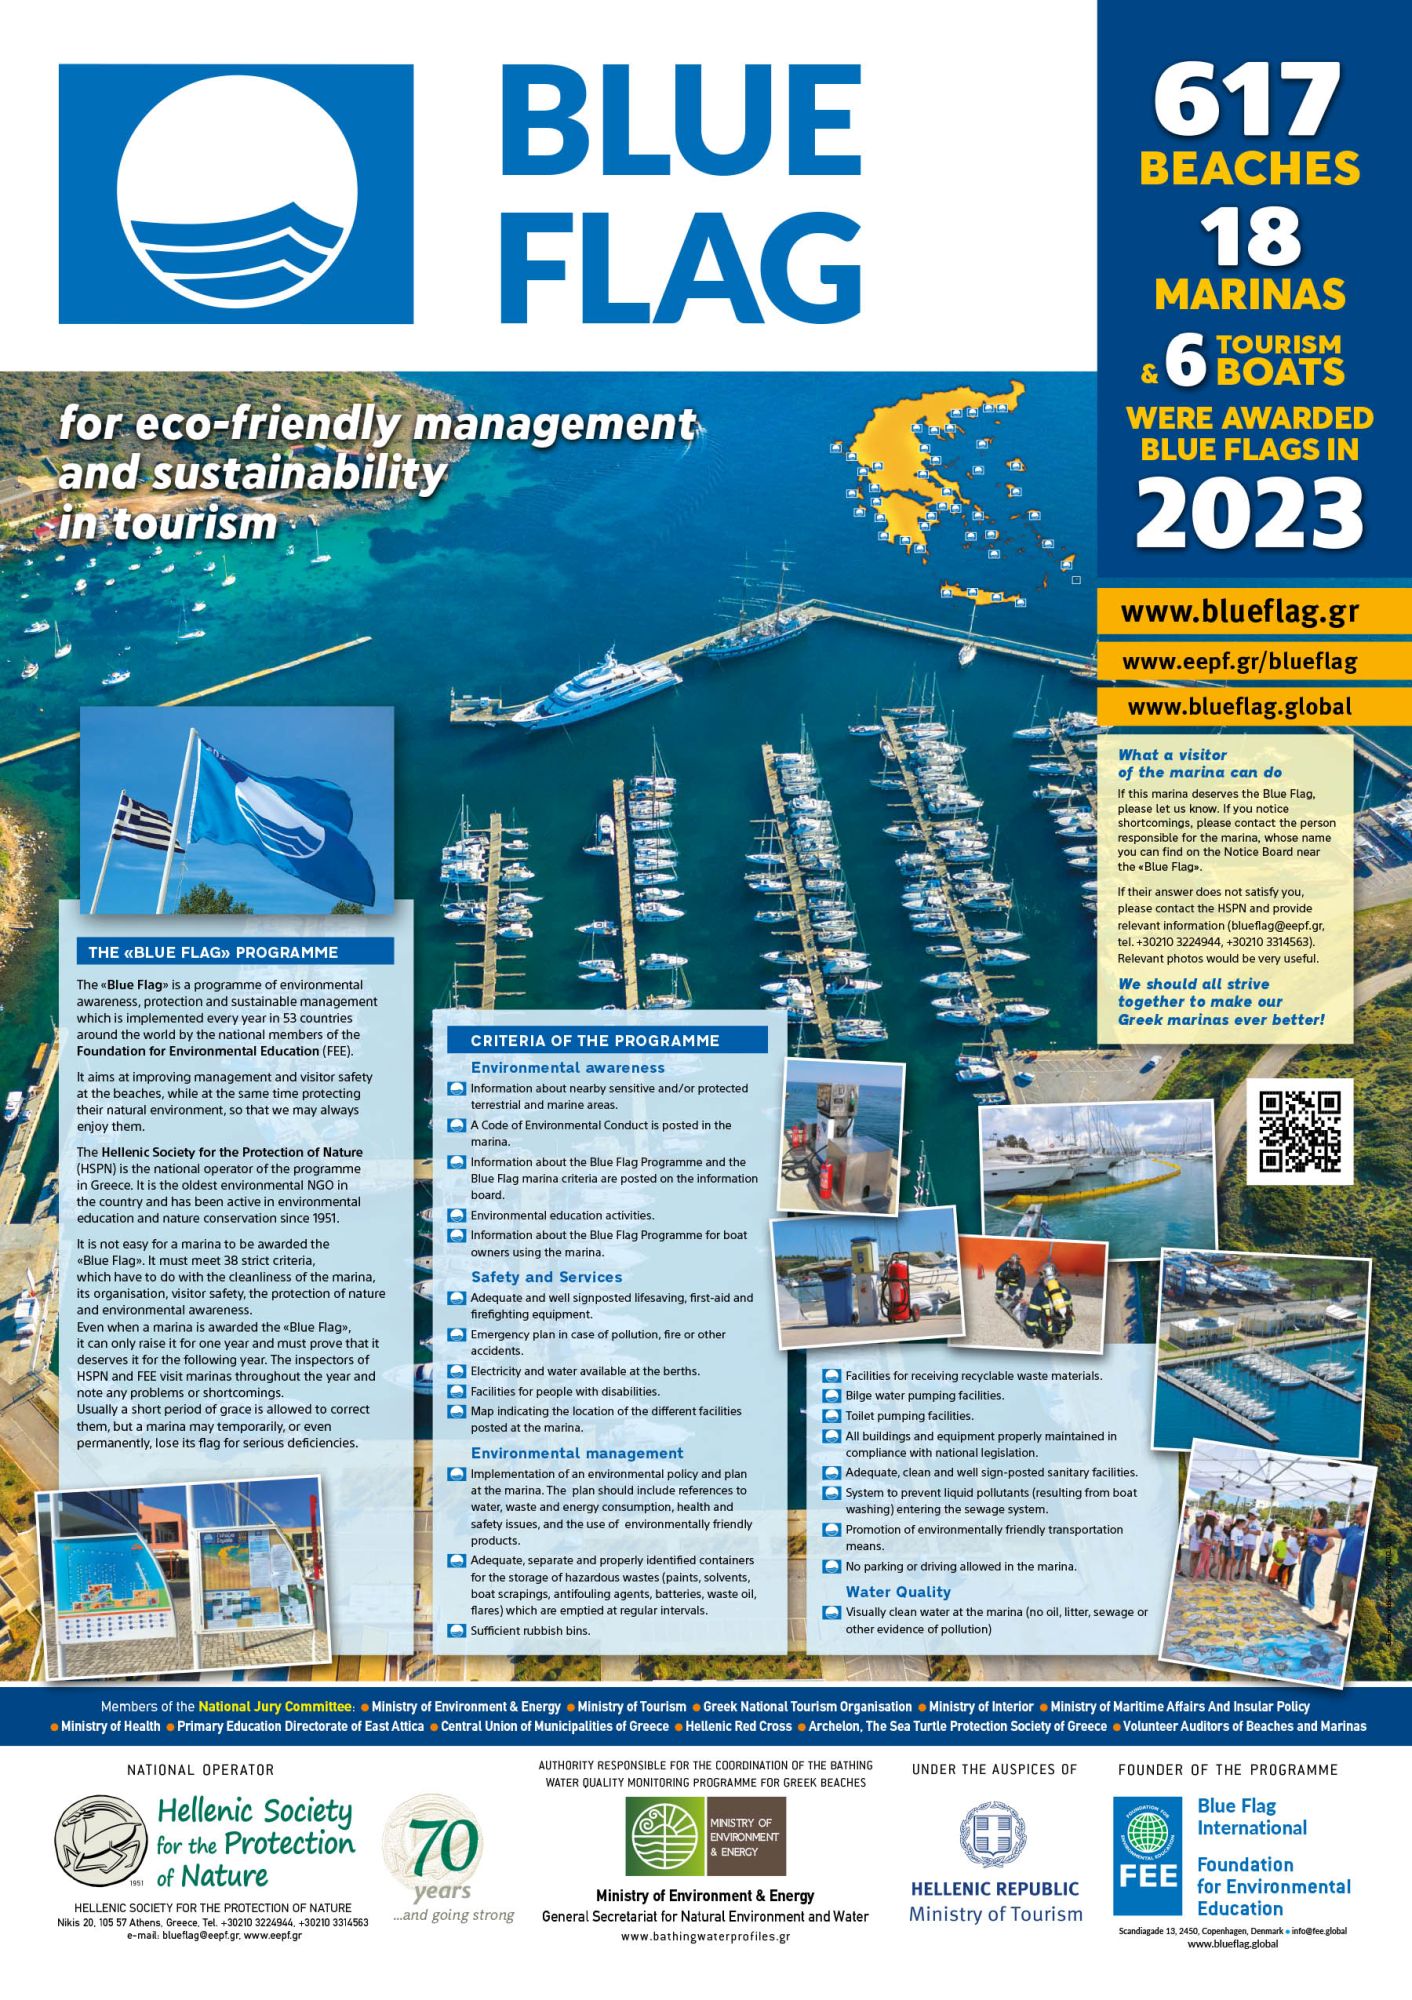 blue flag beaches in Greece 2023